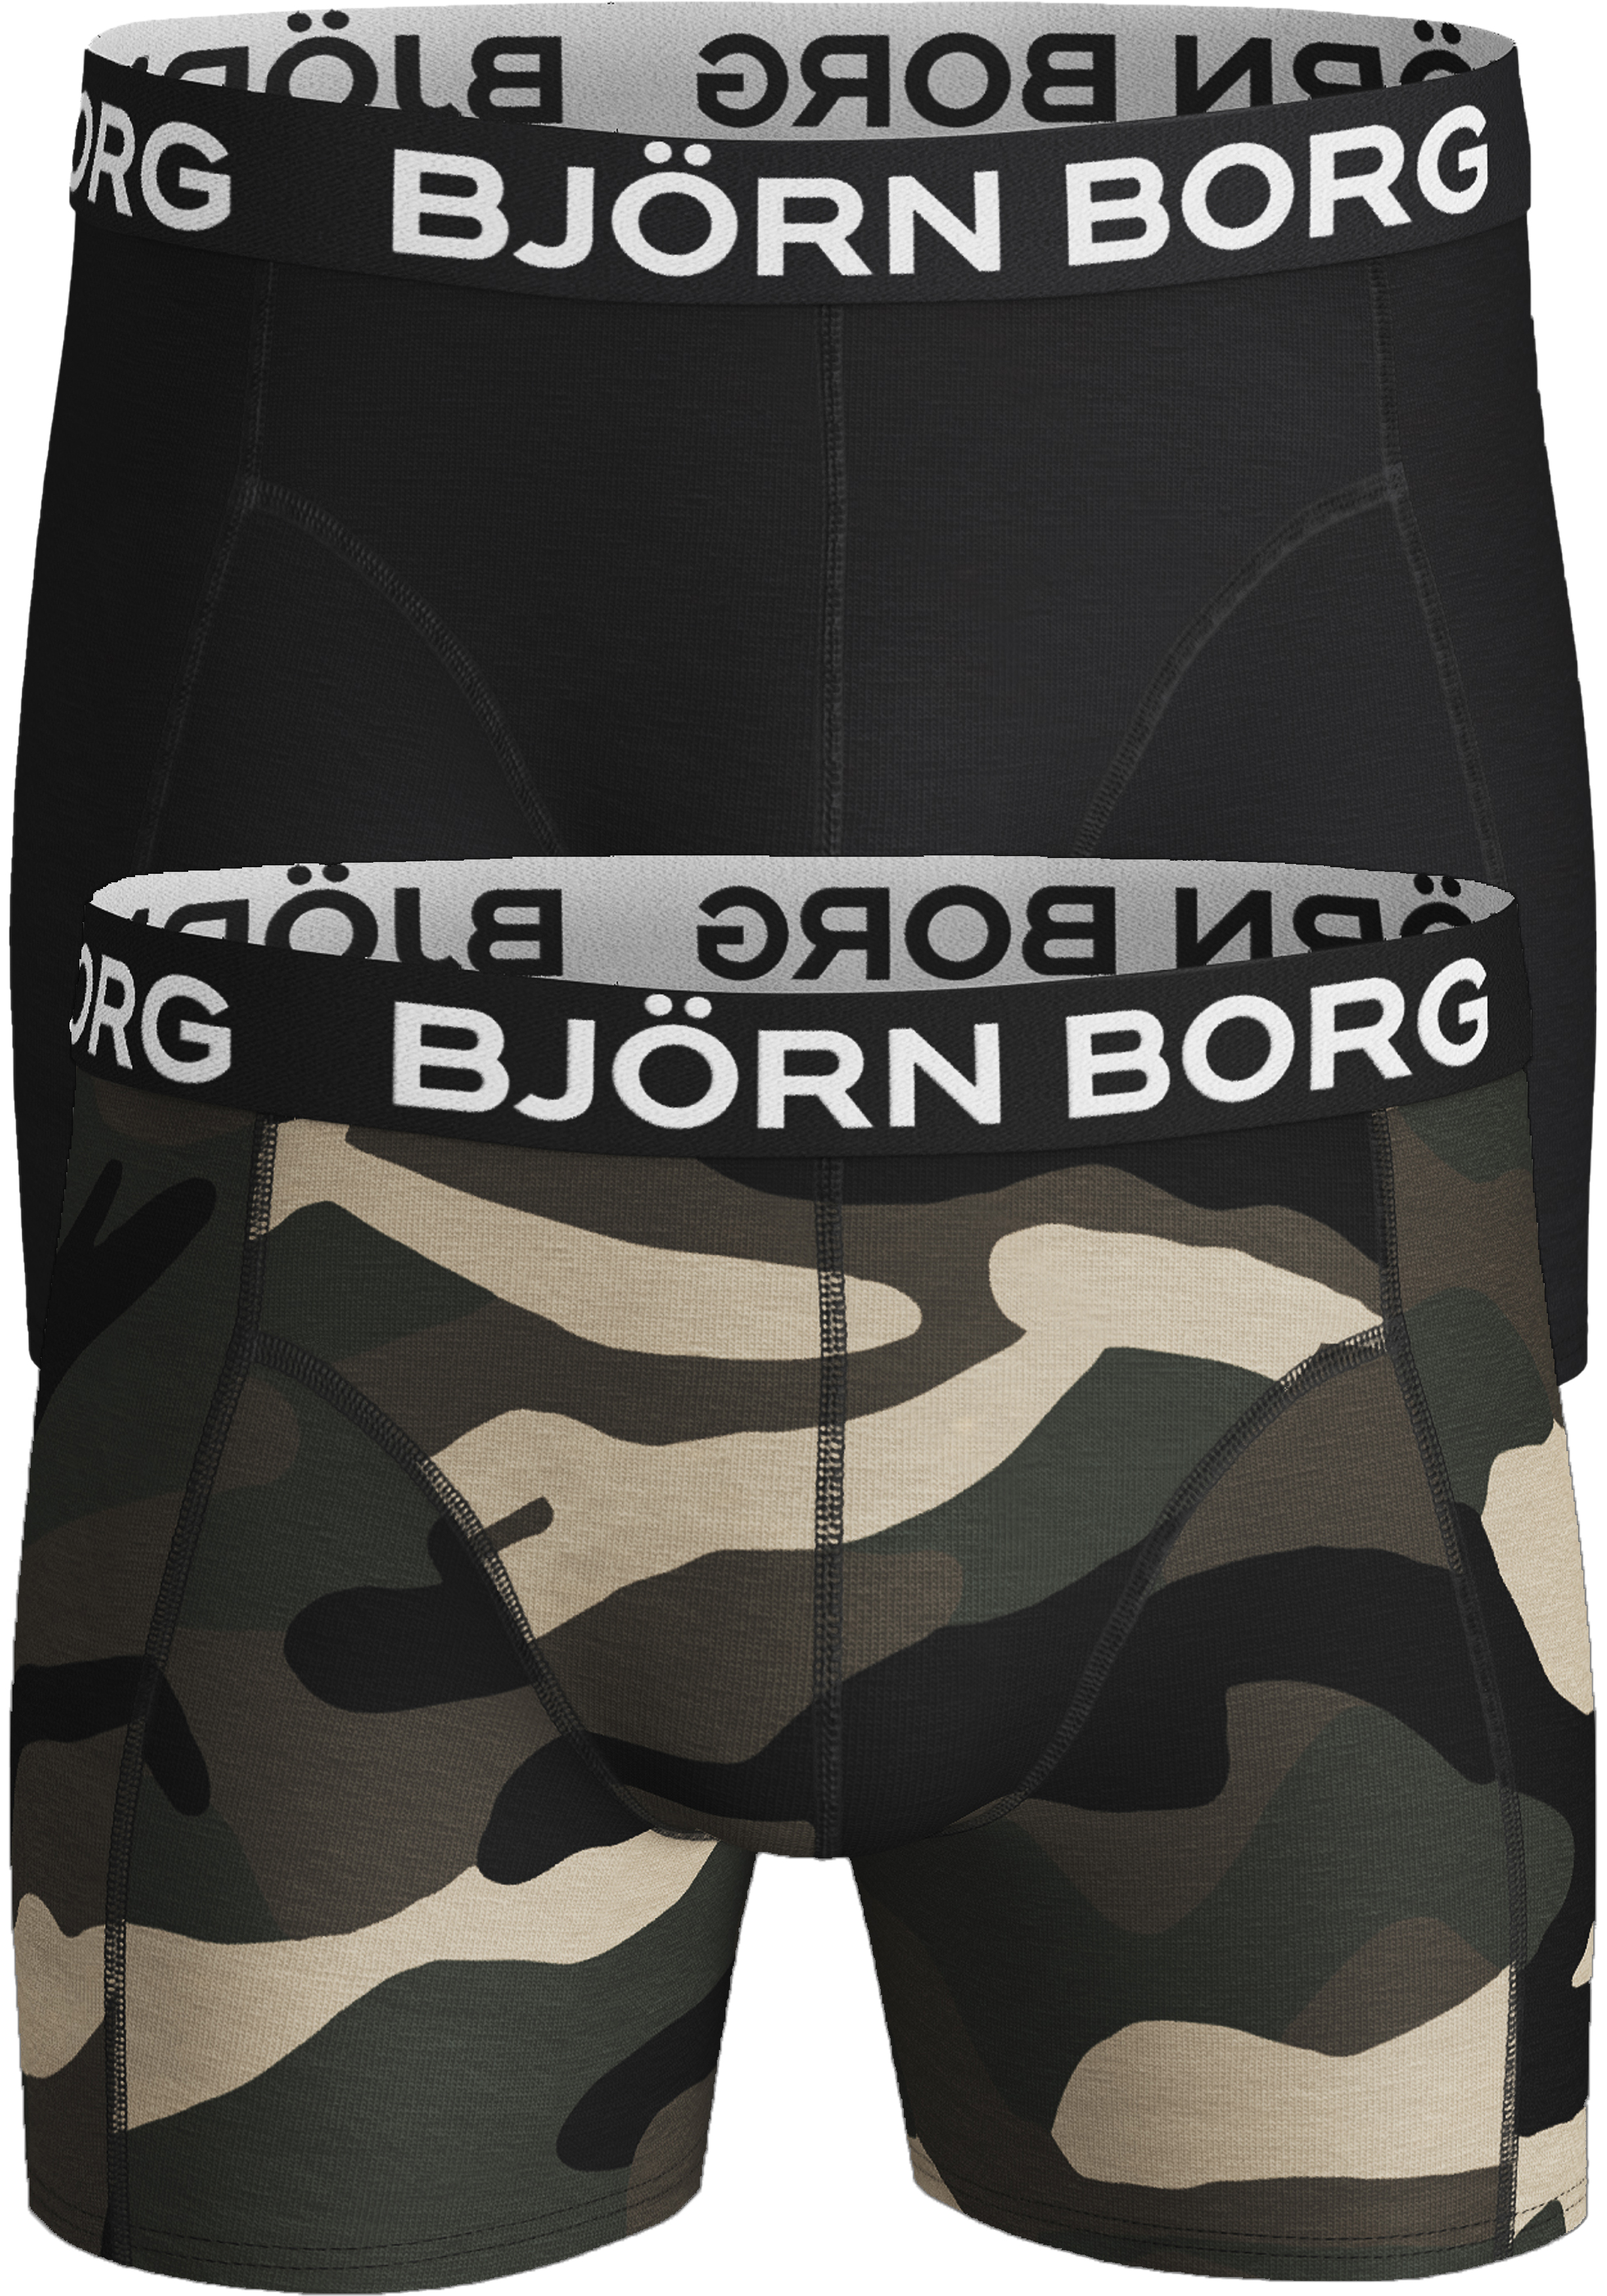 bedrijf faillissement Stevig Bjorn Borg boxershorts Core (2-pack), heren boxers normale lengte,... -  Shop de nieuwste voorjaarsmode